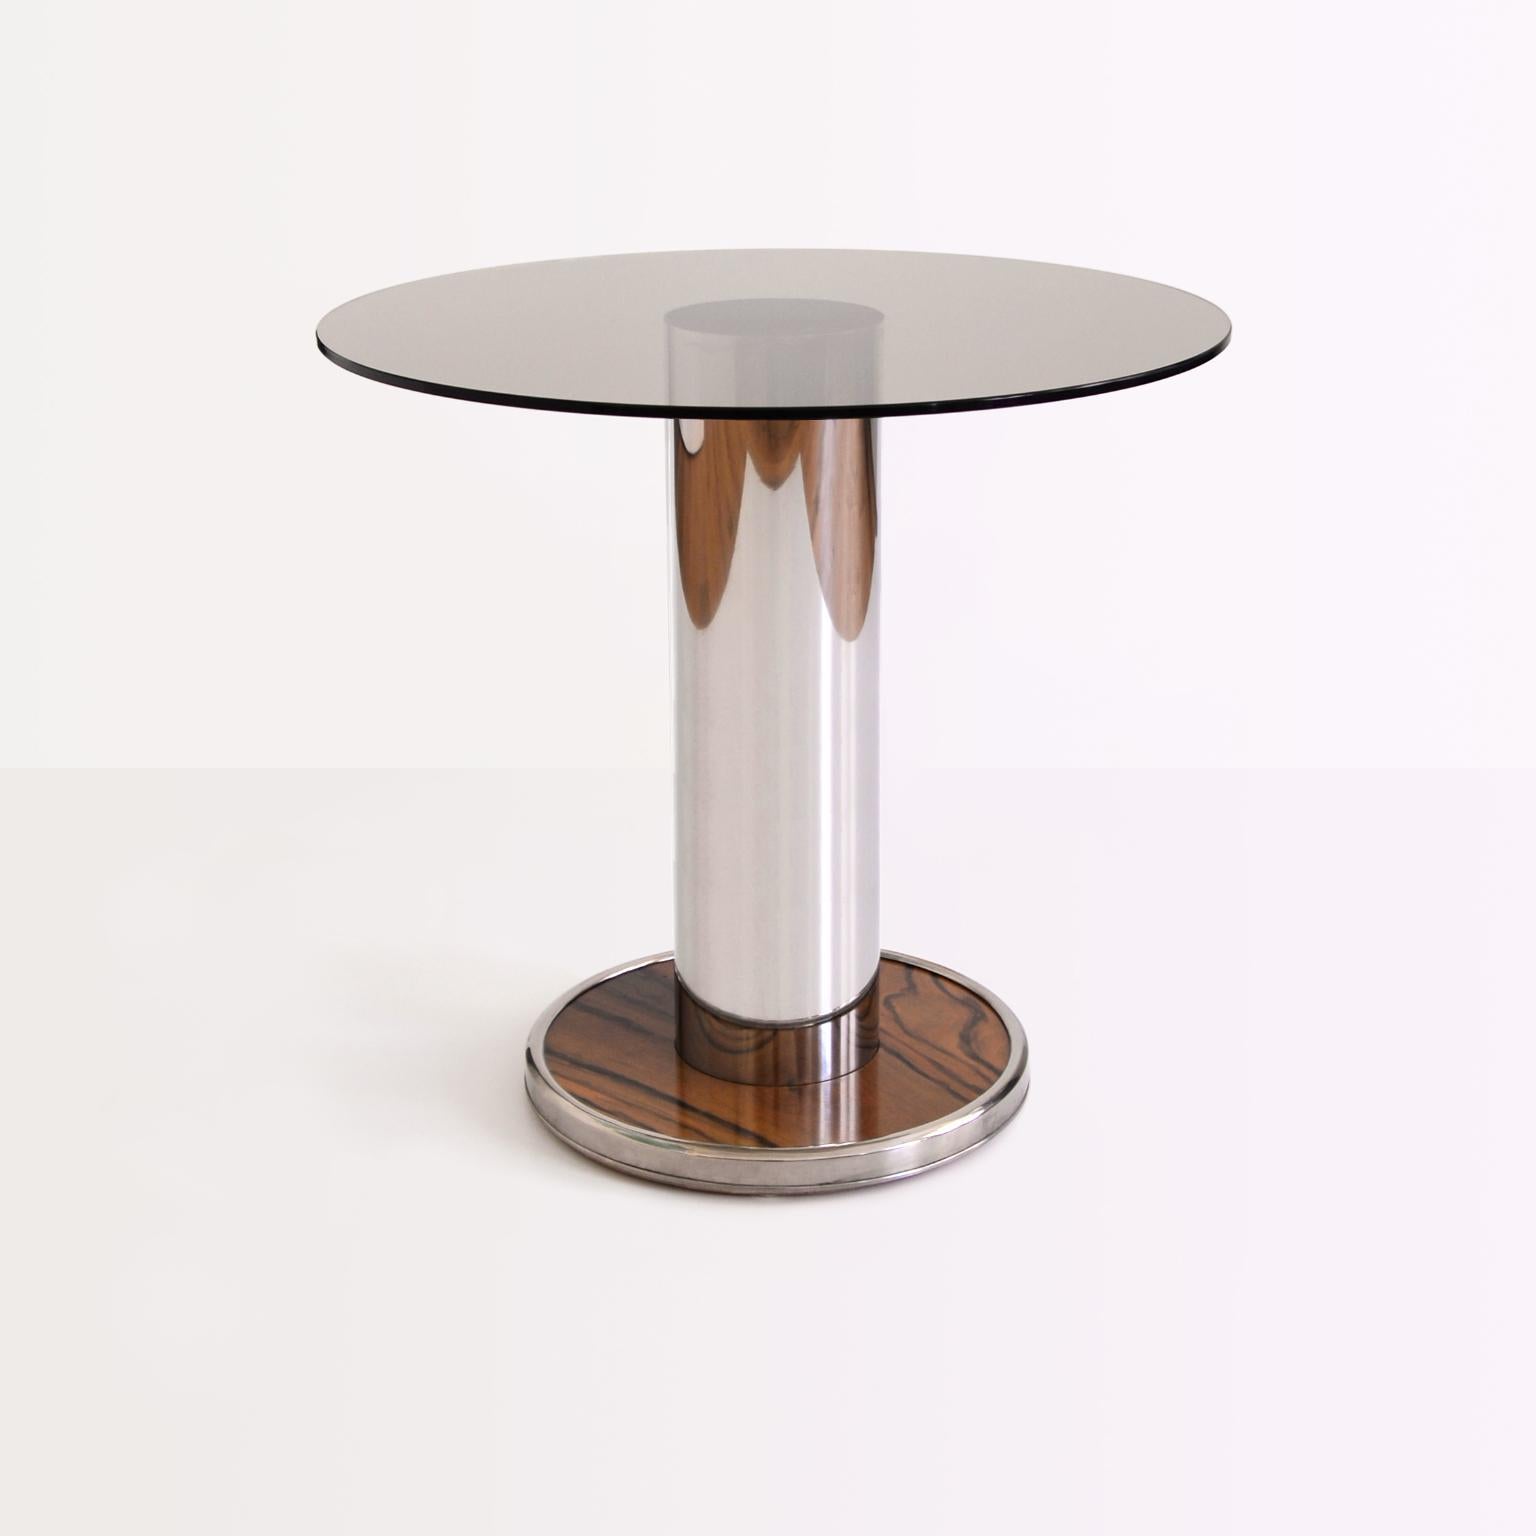 Canapé rond/table basse au look moderniste produit par GMD Berlin. Base en acier inoxydable avec insertion de bois et plateau en verre.